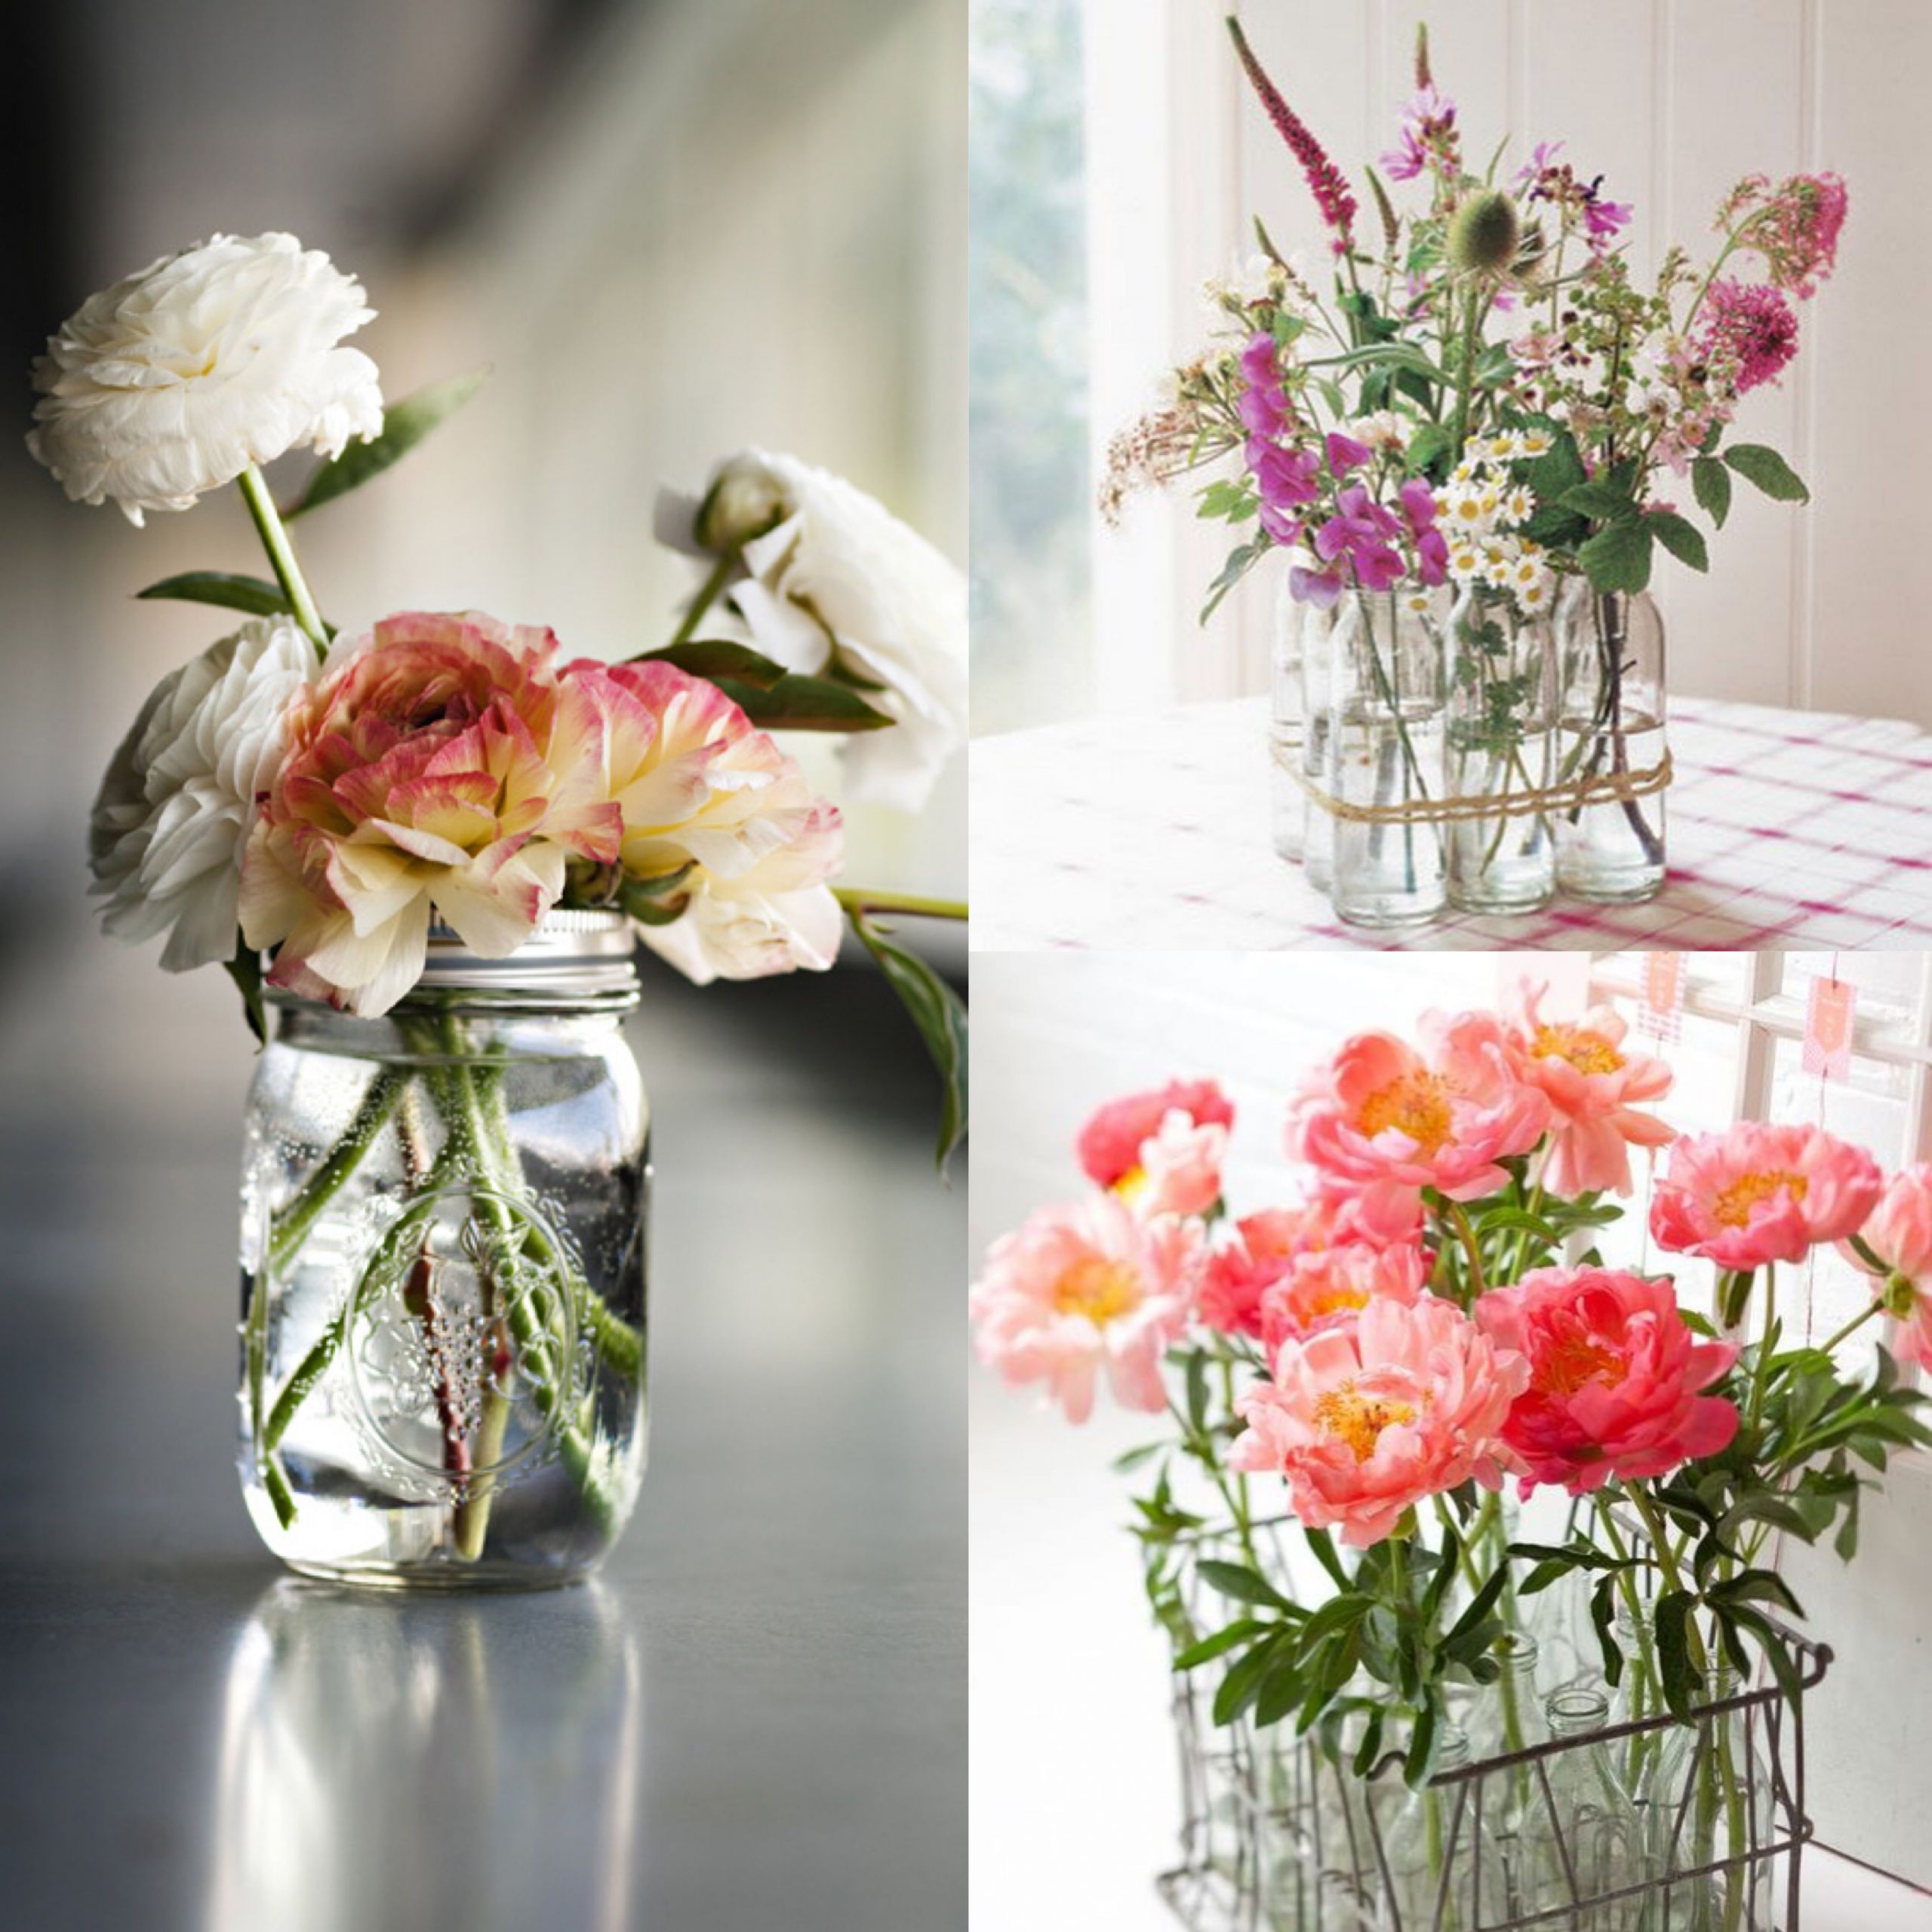 DIY Wedding Flowers Tips
 How to Make Simple DIY Flower Arrangements